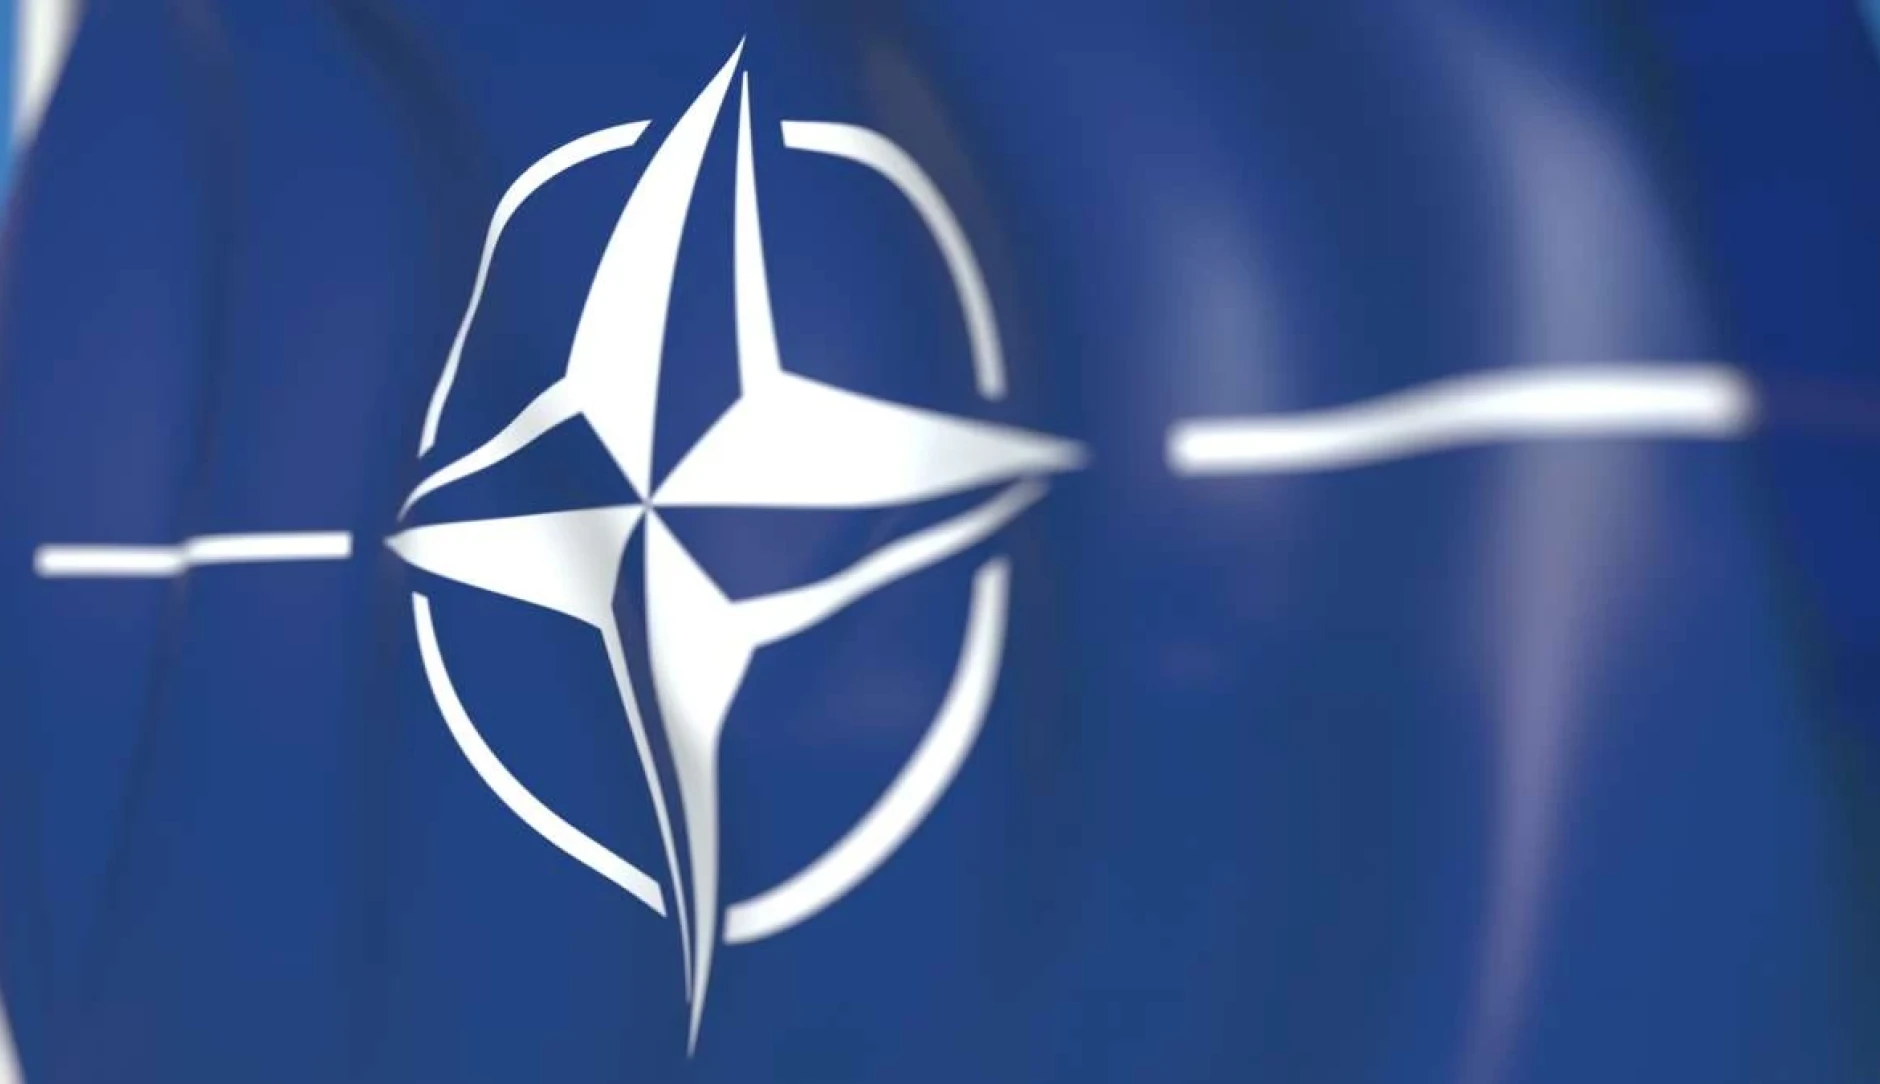 The Nato flag